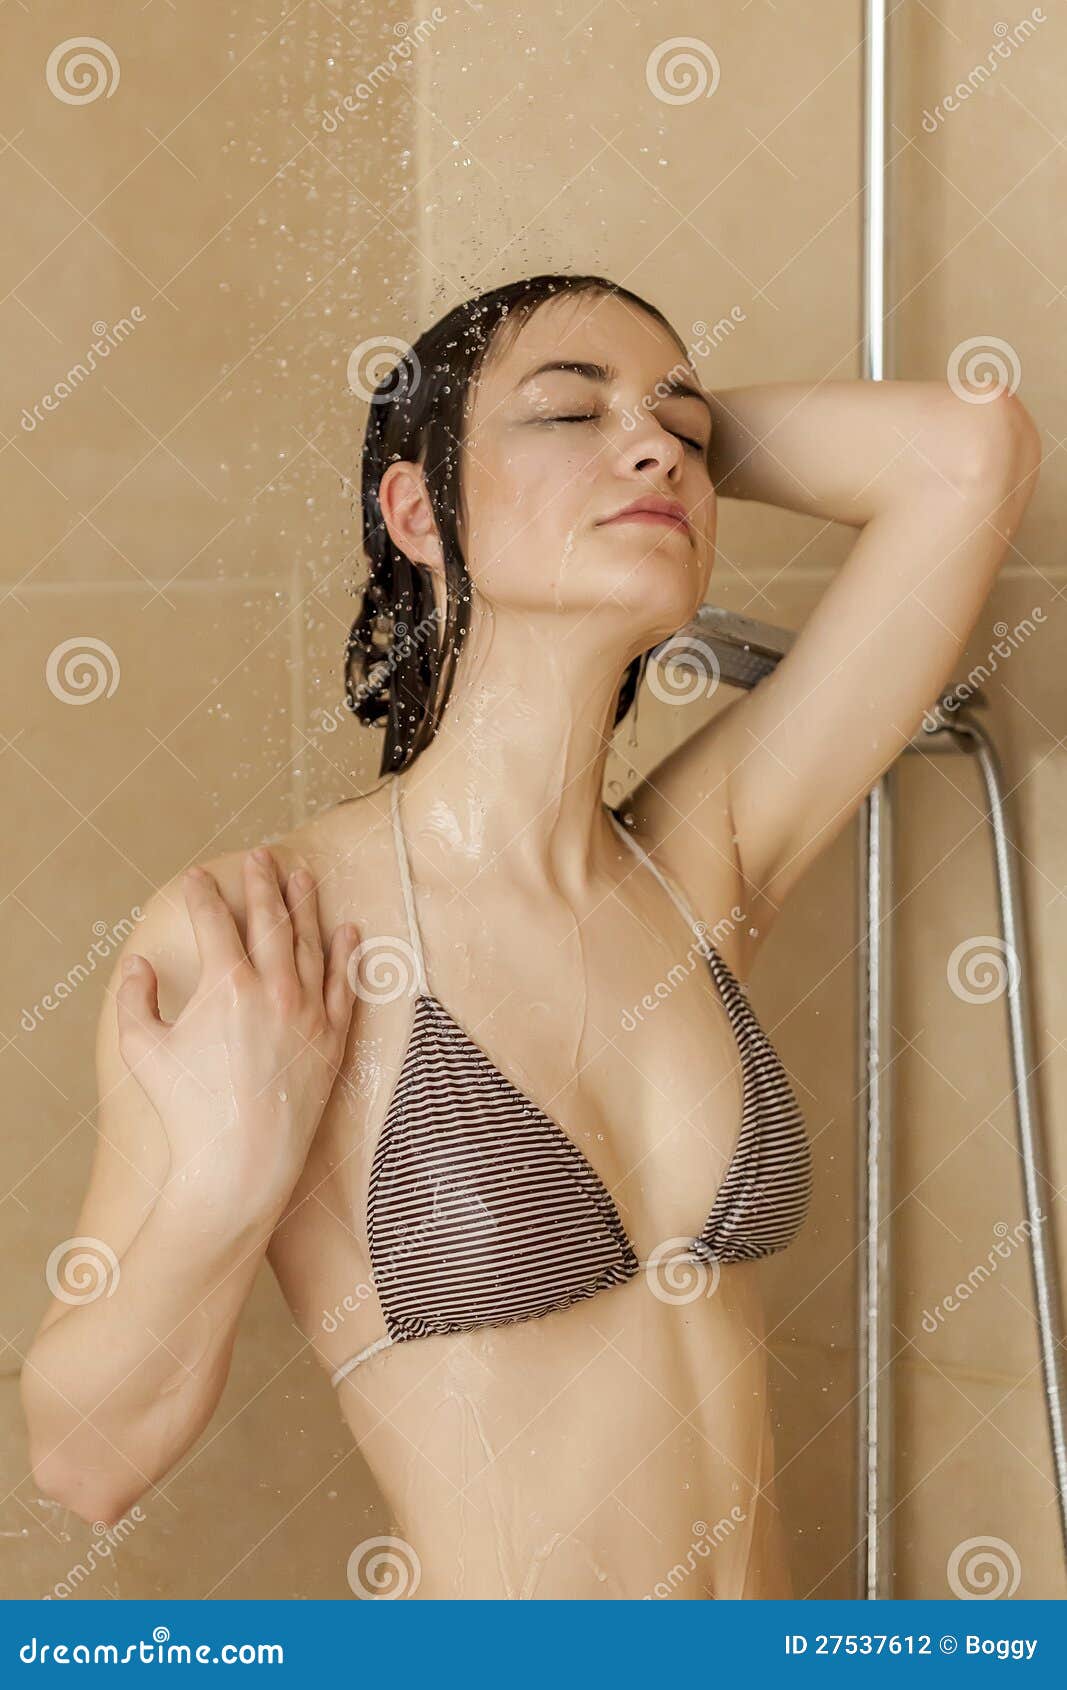 Riesige nasse Titten in der Dusche